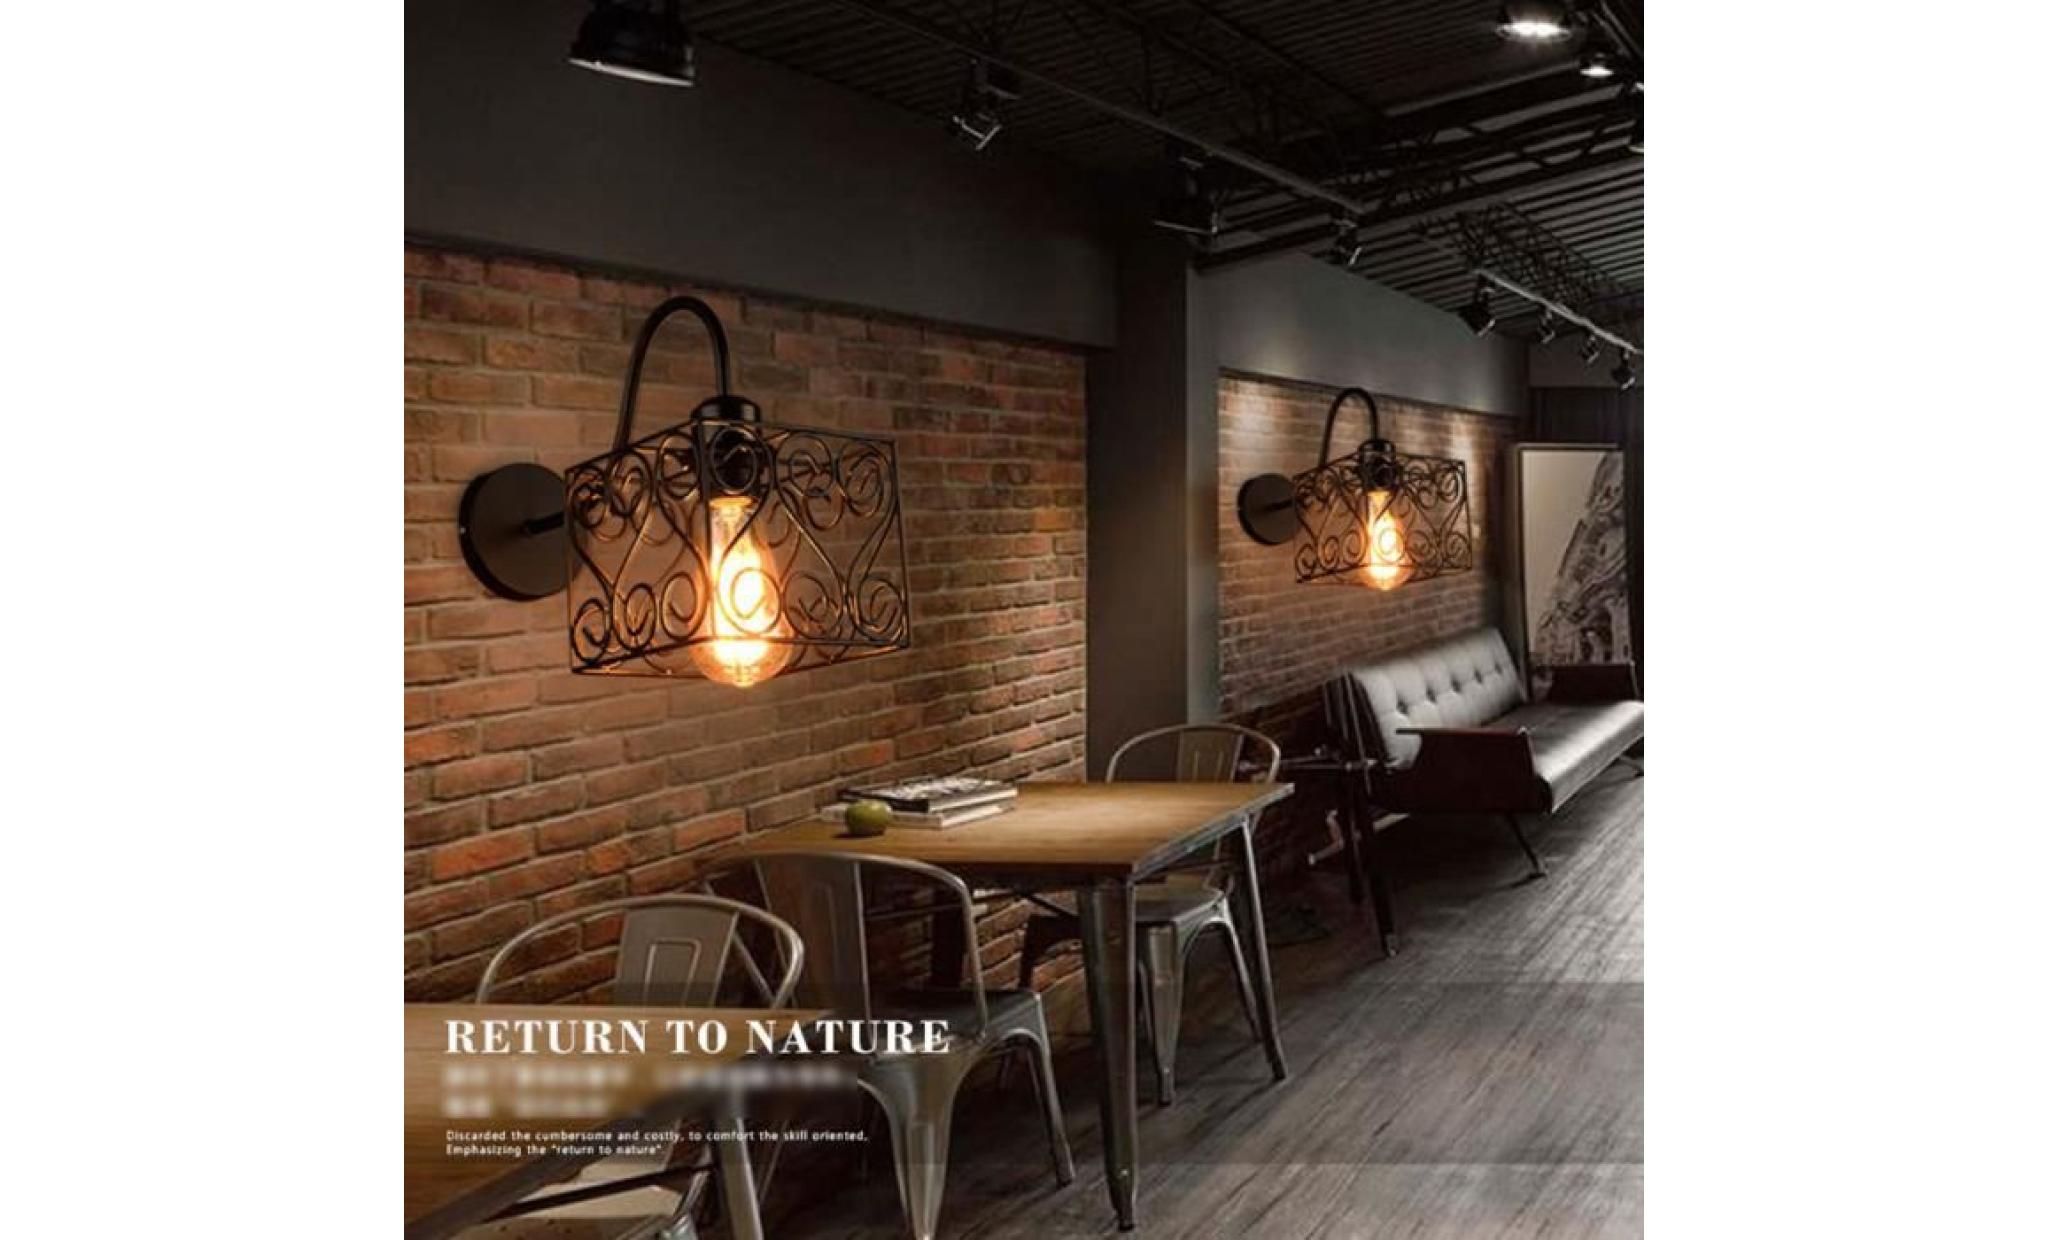 rétro vintage applique loft lampe murale réglable mur de feu edison cage de fer e27 industriel décor couloir bar café hôtel style d